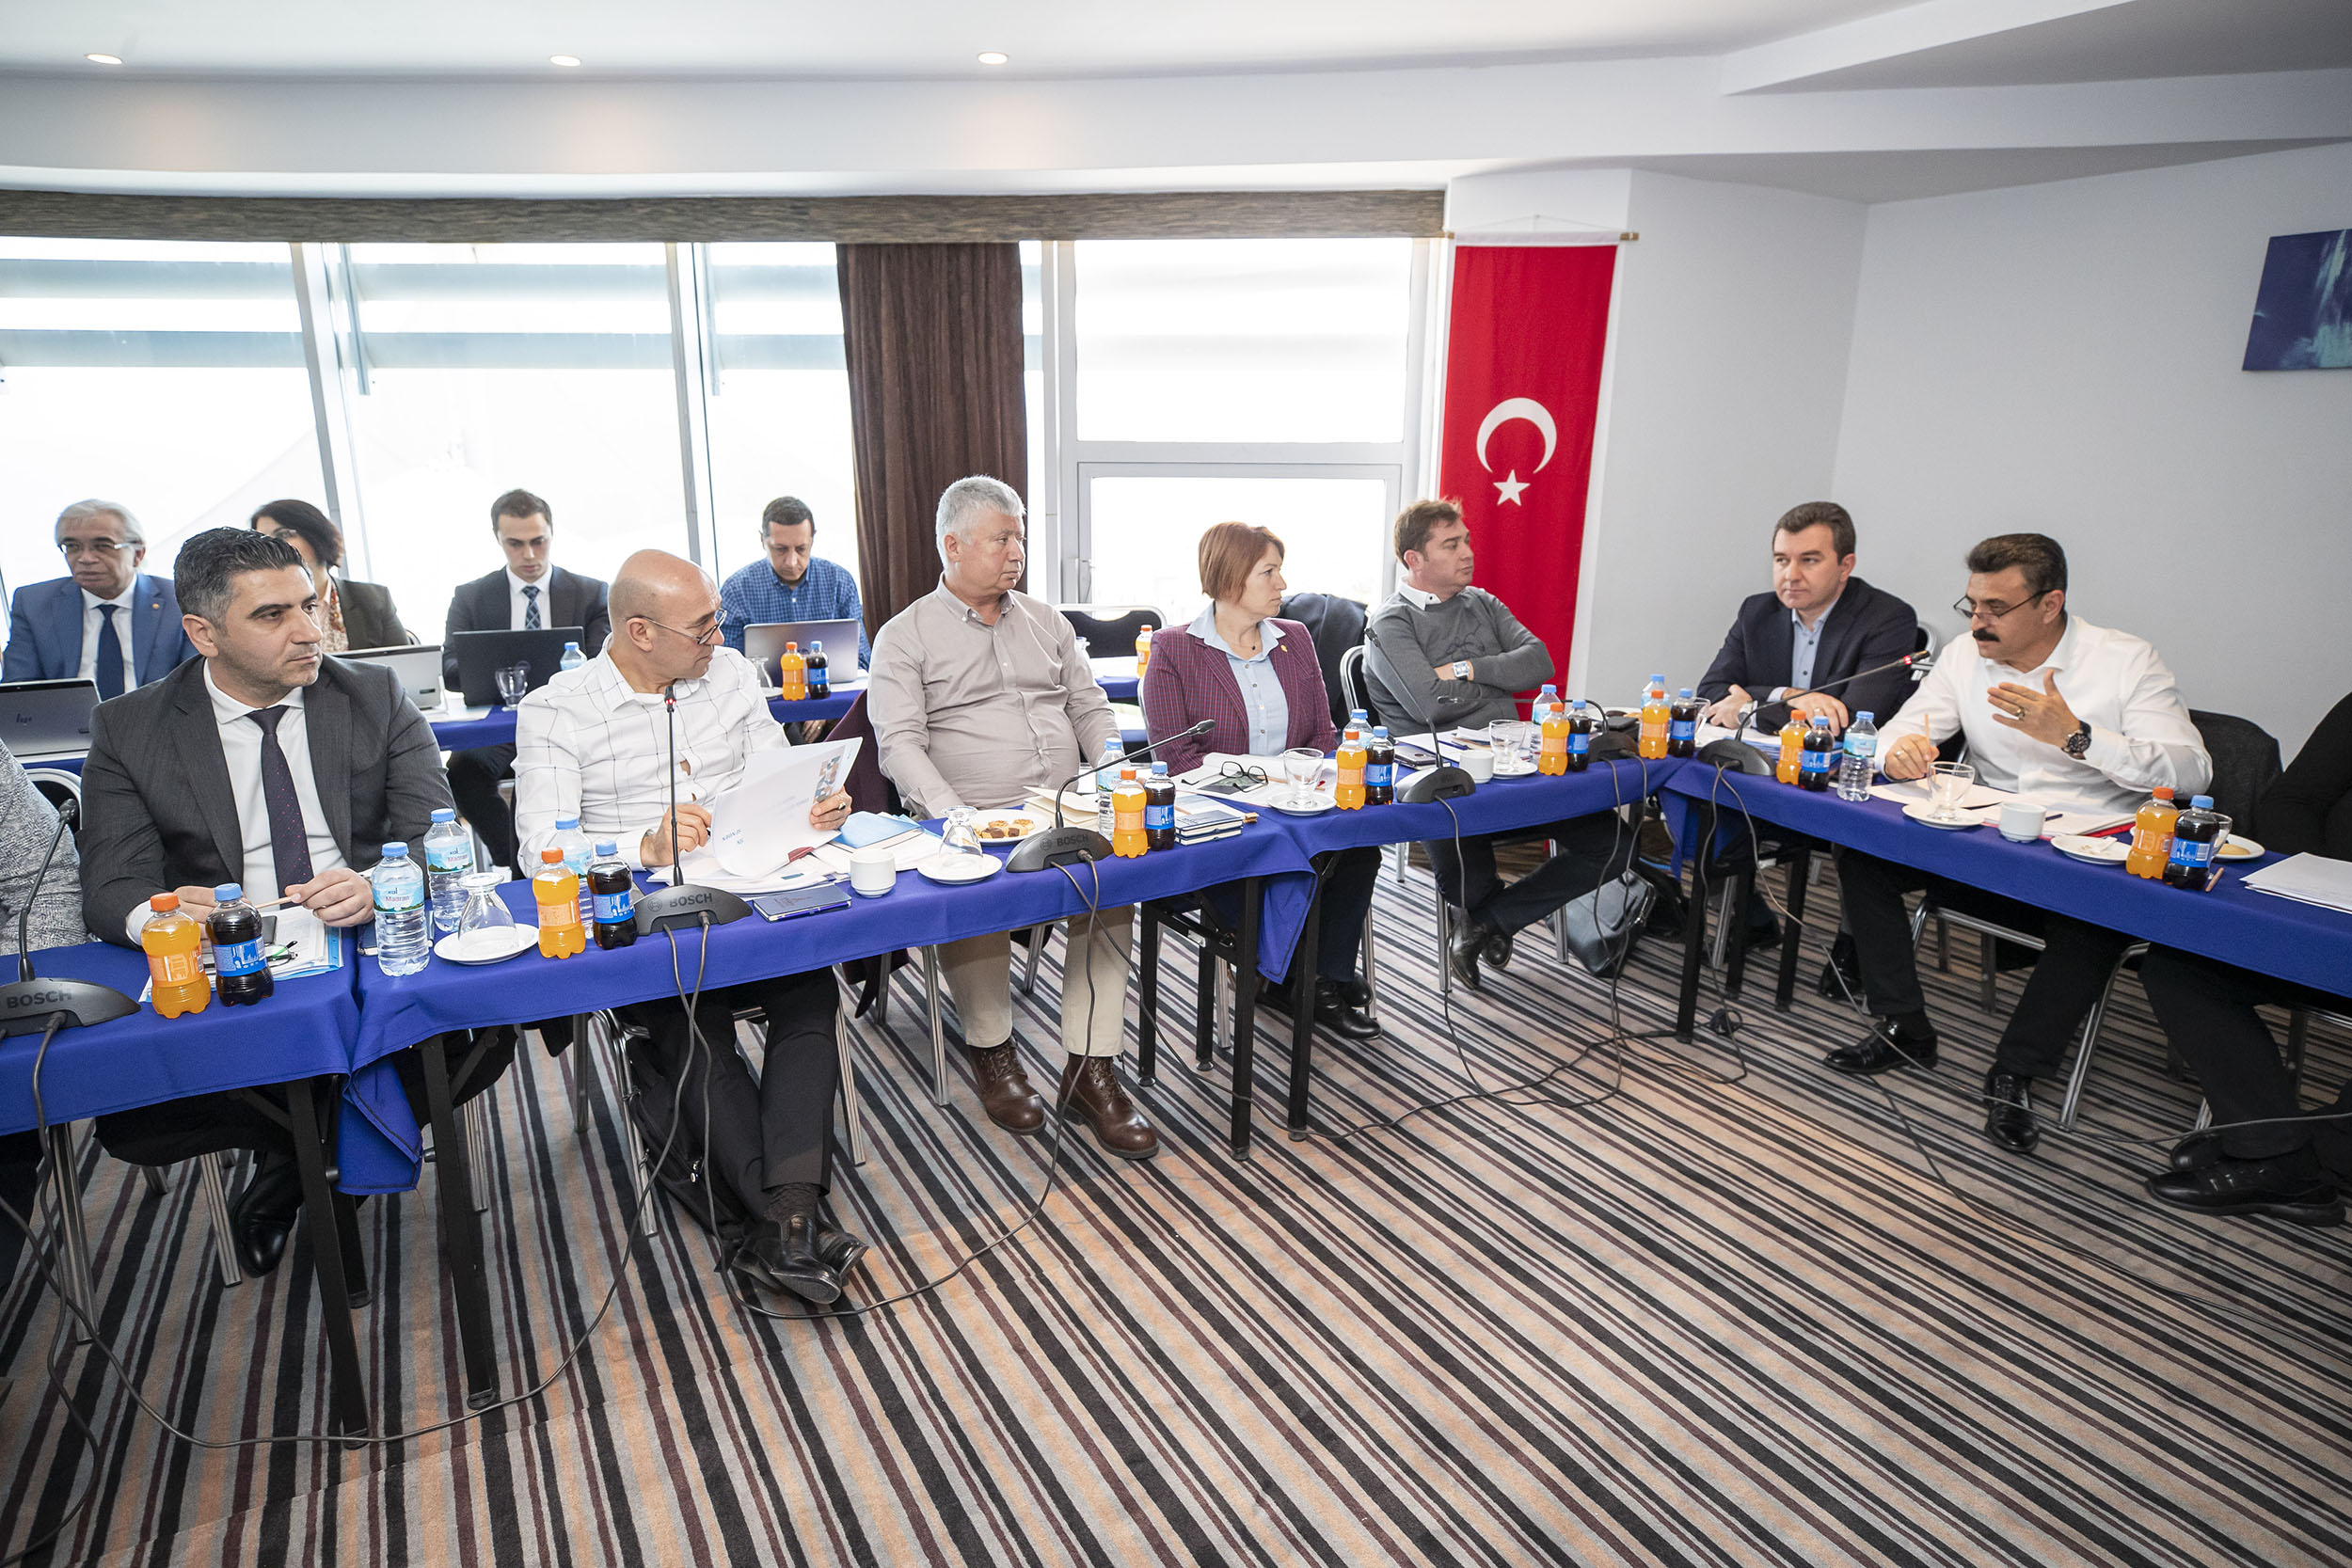 İzmir’in başkanları Menderes’te toplandı